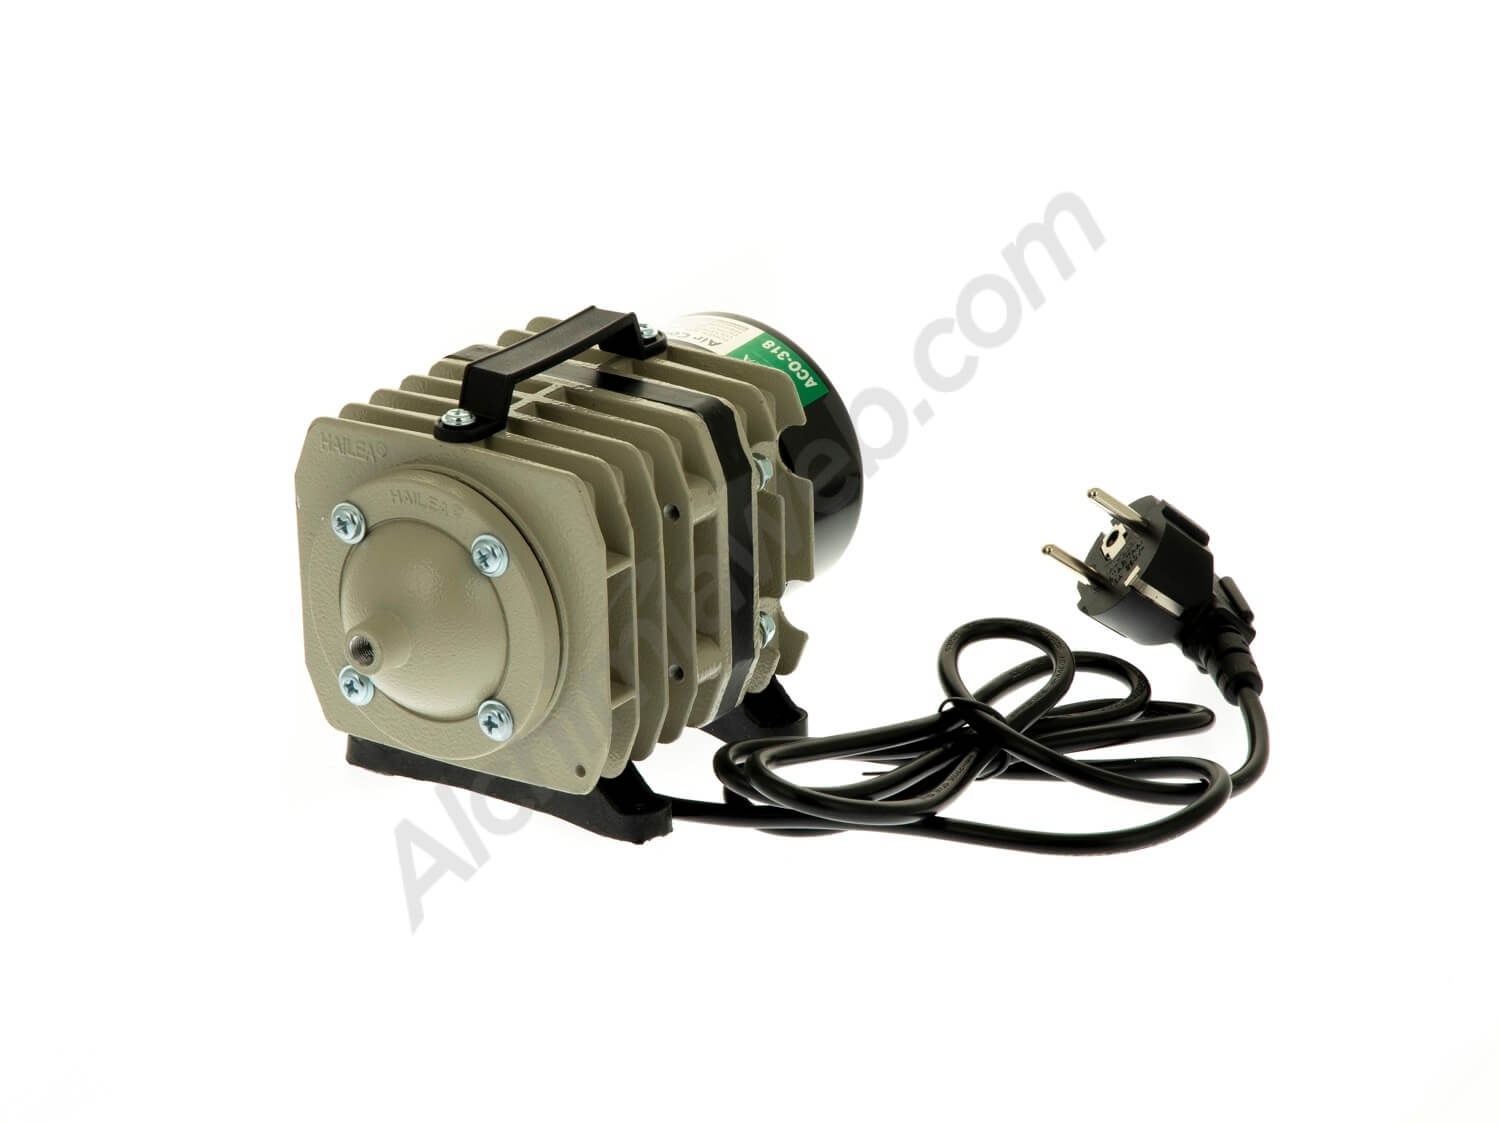 Hailea ACO-318 air compressor 8 outputs 3600l/h